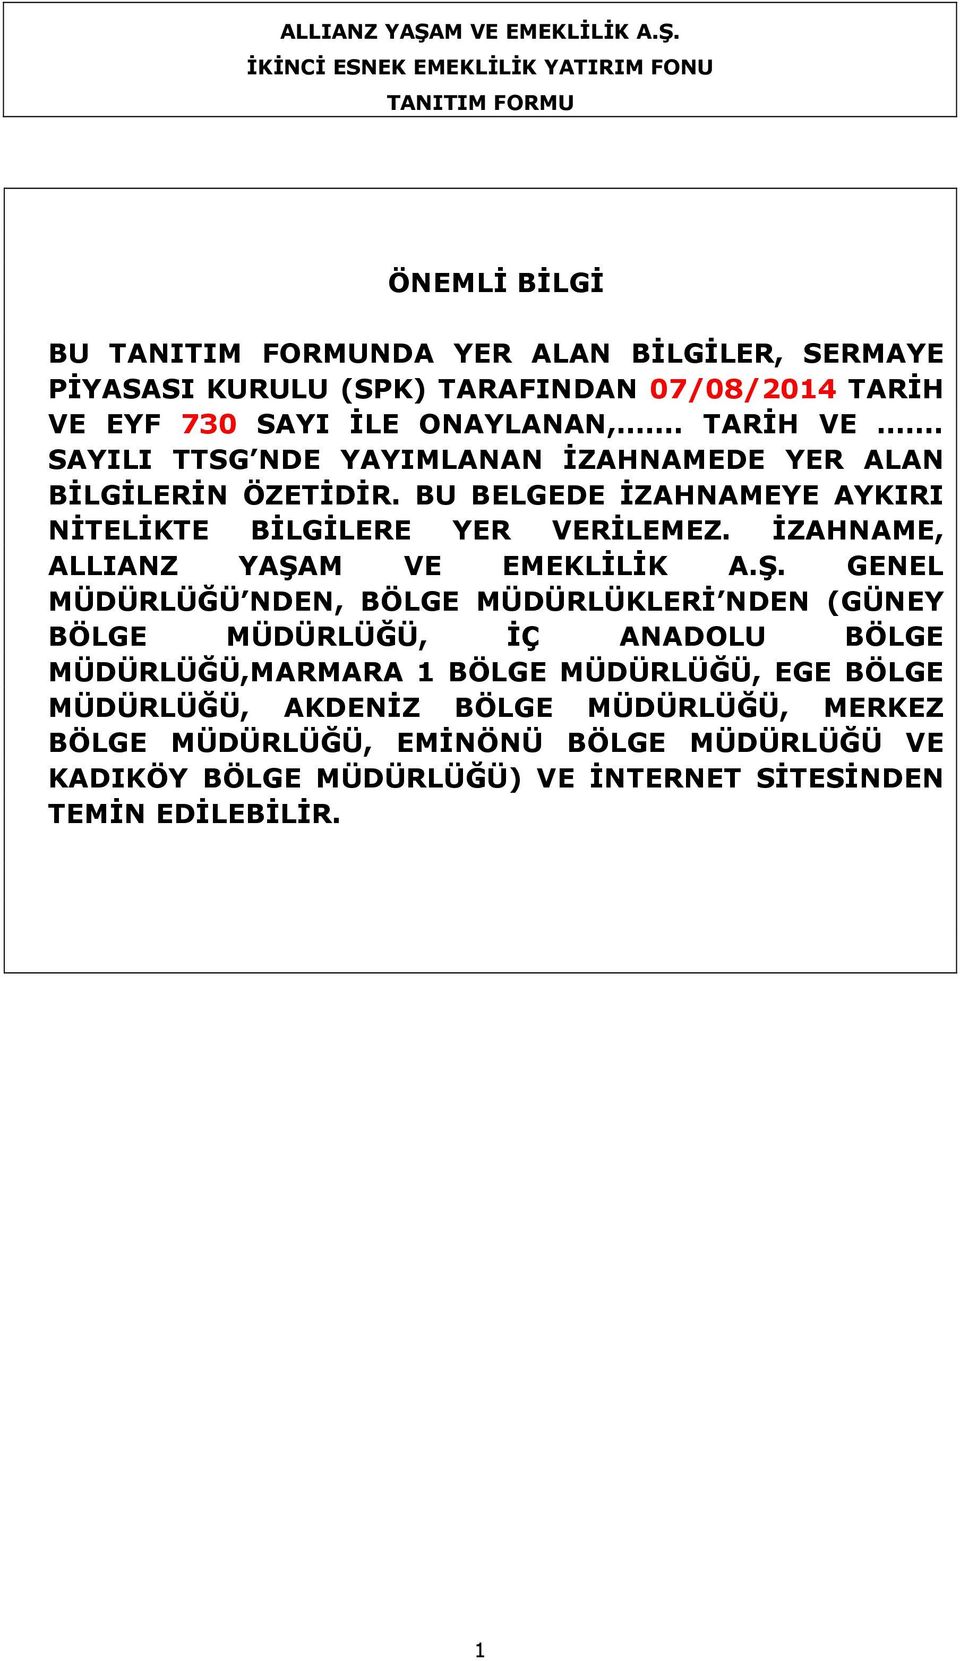 İKİNCİ ESNEK EMEKLİLİK YATIRIM FONU TANITIM FORMU ÖNEMLİ BİLGİ BU TANITIM FORMUNDA YER ALAN BİLGİLER, SERMAYE PİYASASI KURULU (SPK) TARAFINDAN 07/08/2014 TARİH VE EYF 730